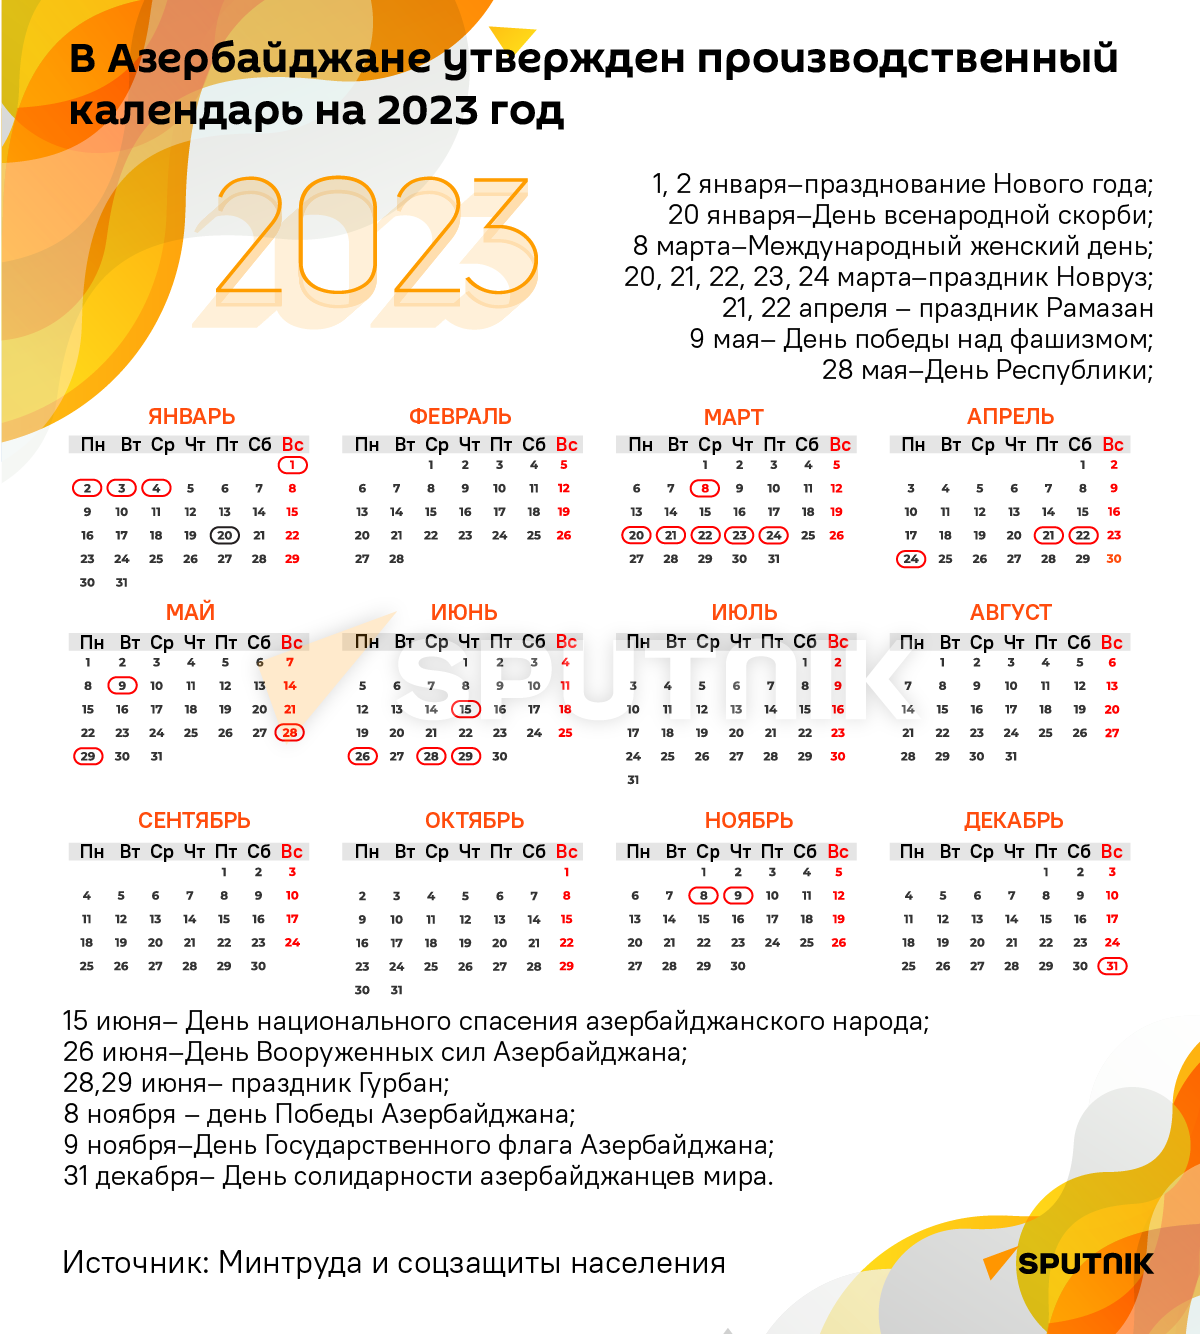 Инфографика: В Азербайджане утвержден производственный календарь на 2023 год - Sputnik Азербайджан